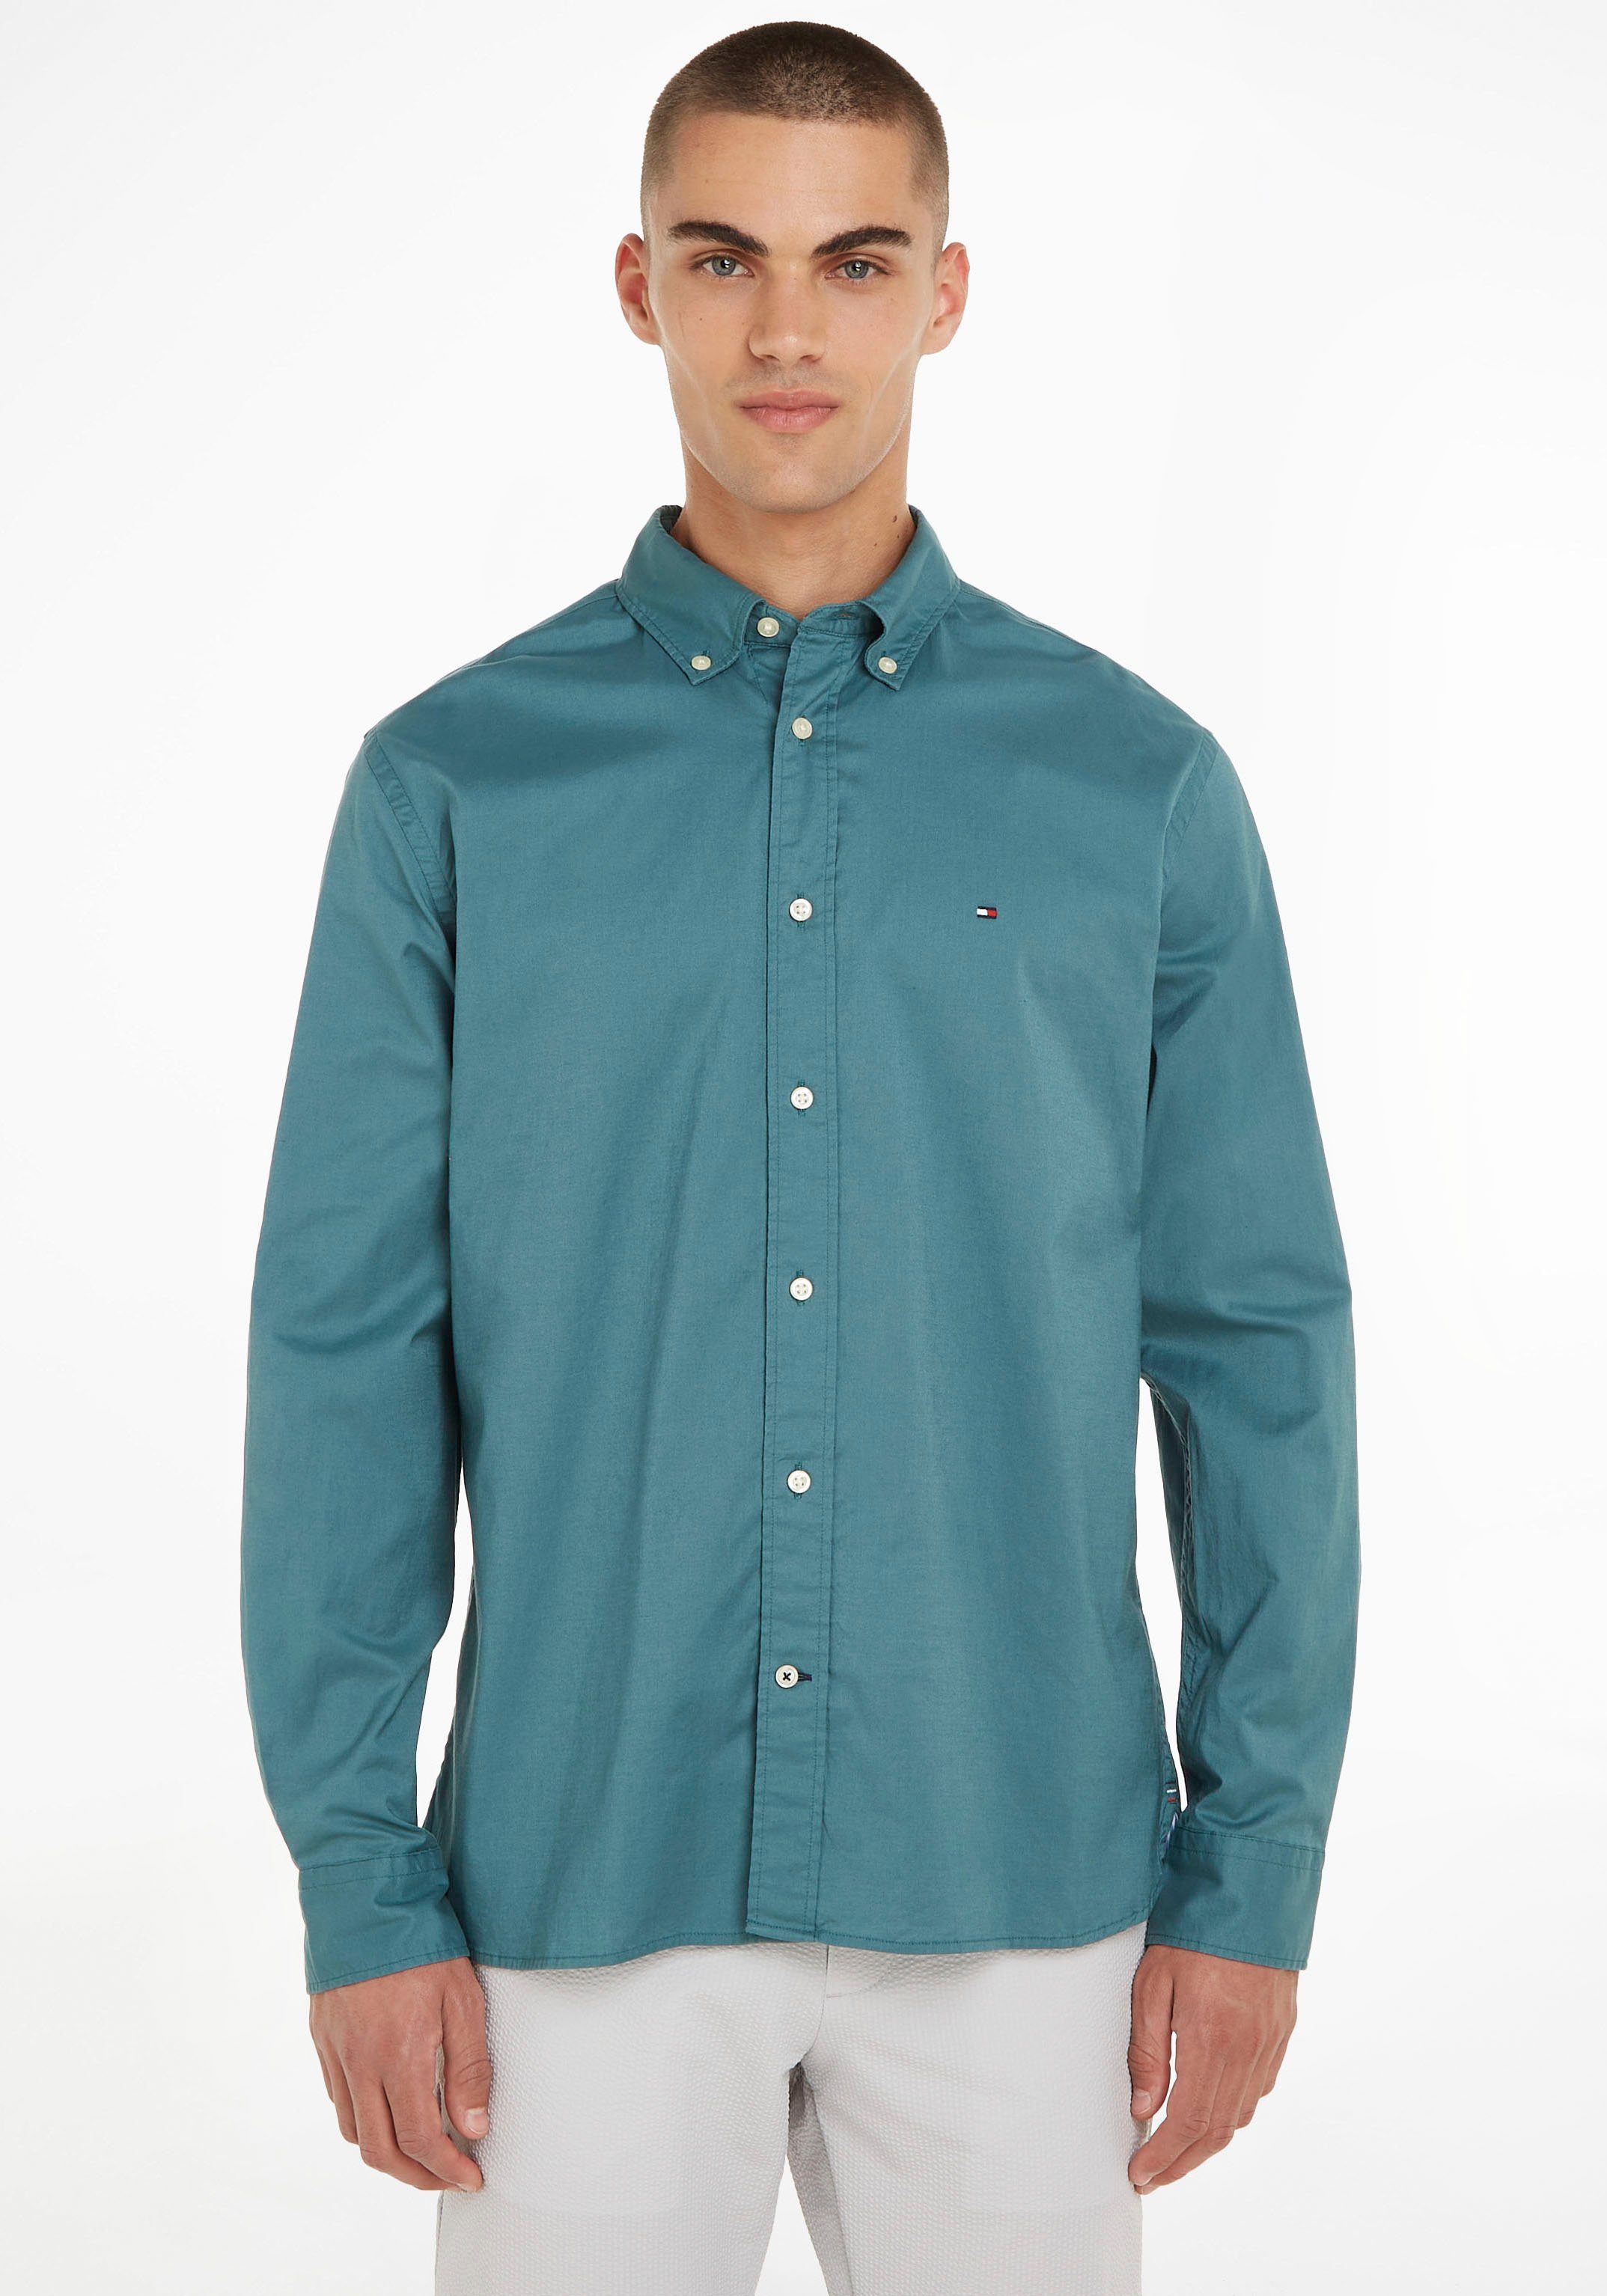 Grüne Tommy Hilfiger Hemden für Herren online kaufen | OTTO